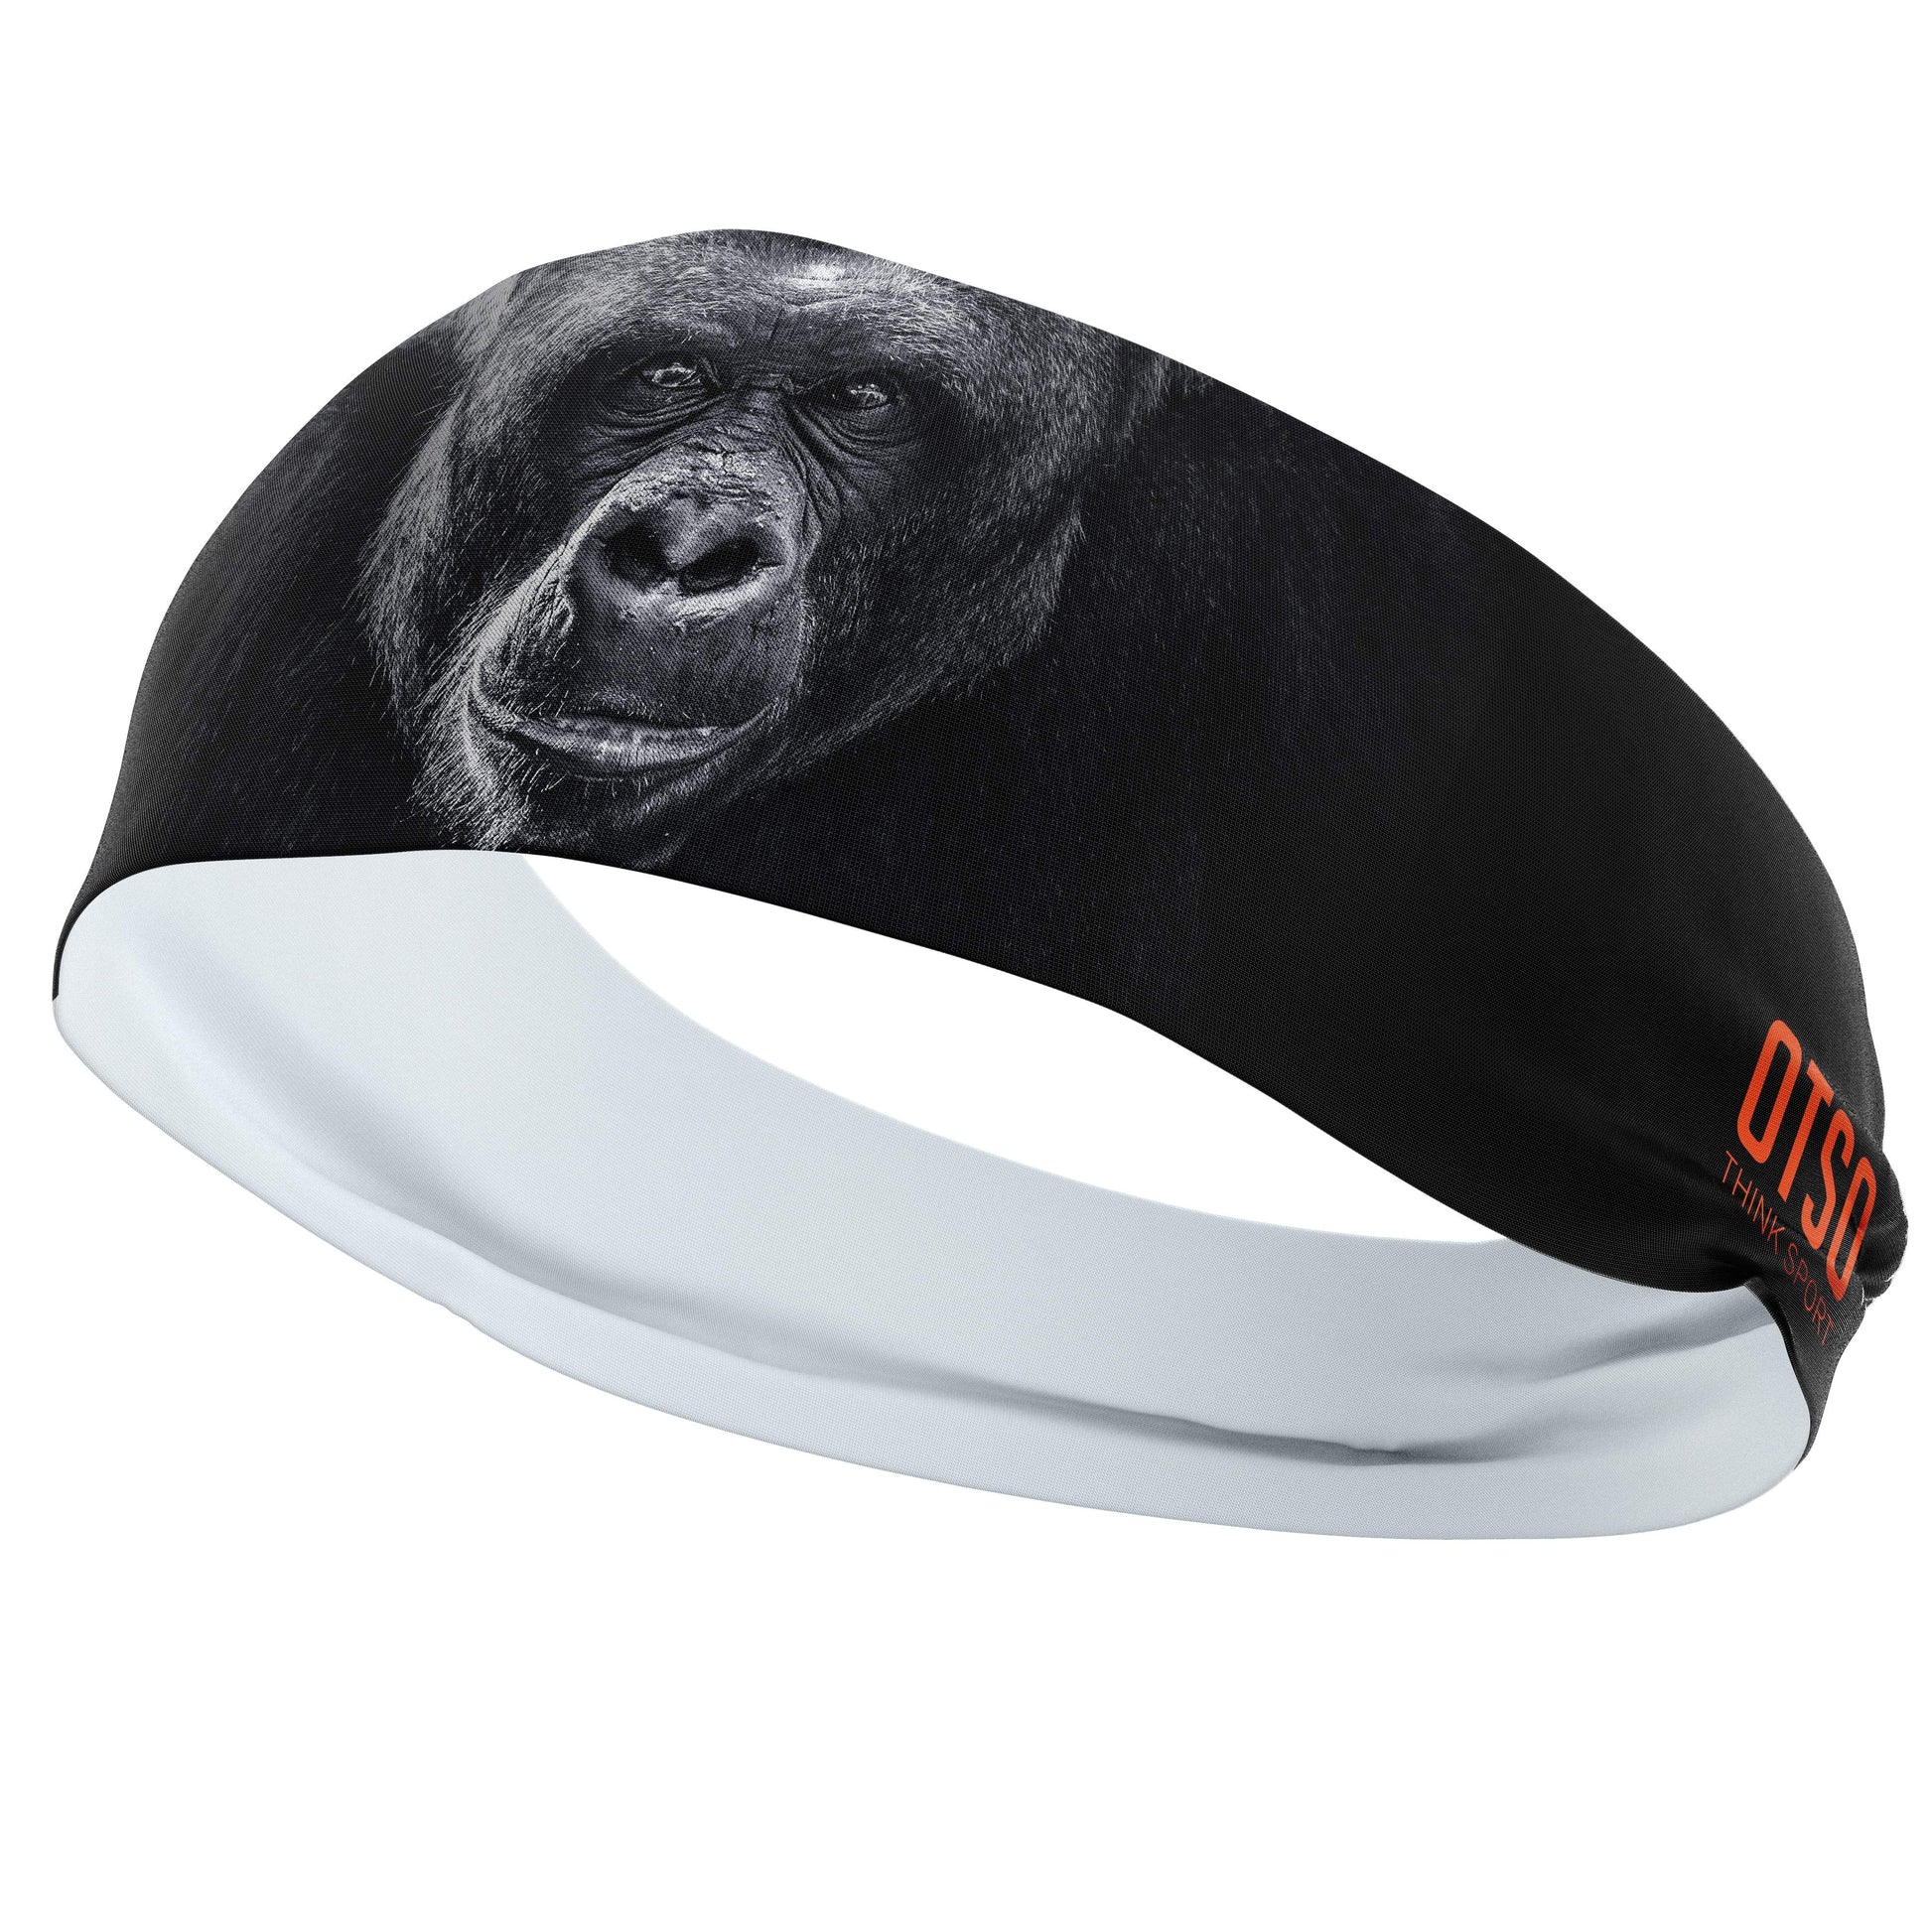 Headband Otso de 12 centímetros de grosor y con el diseño de un gorila. El producto es unisex y de talla única